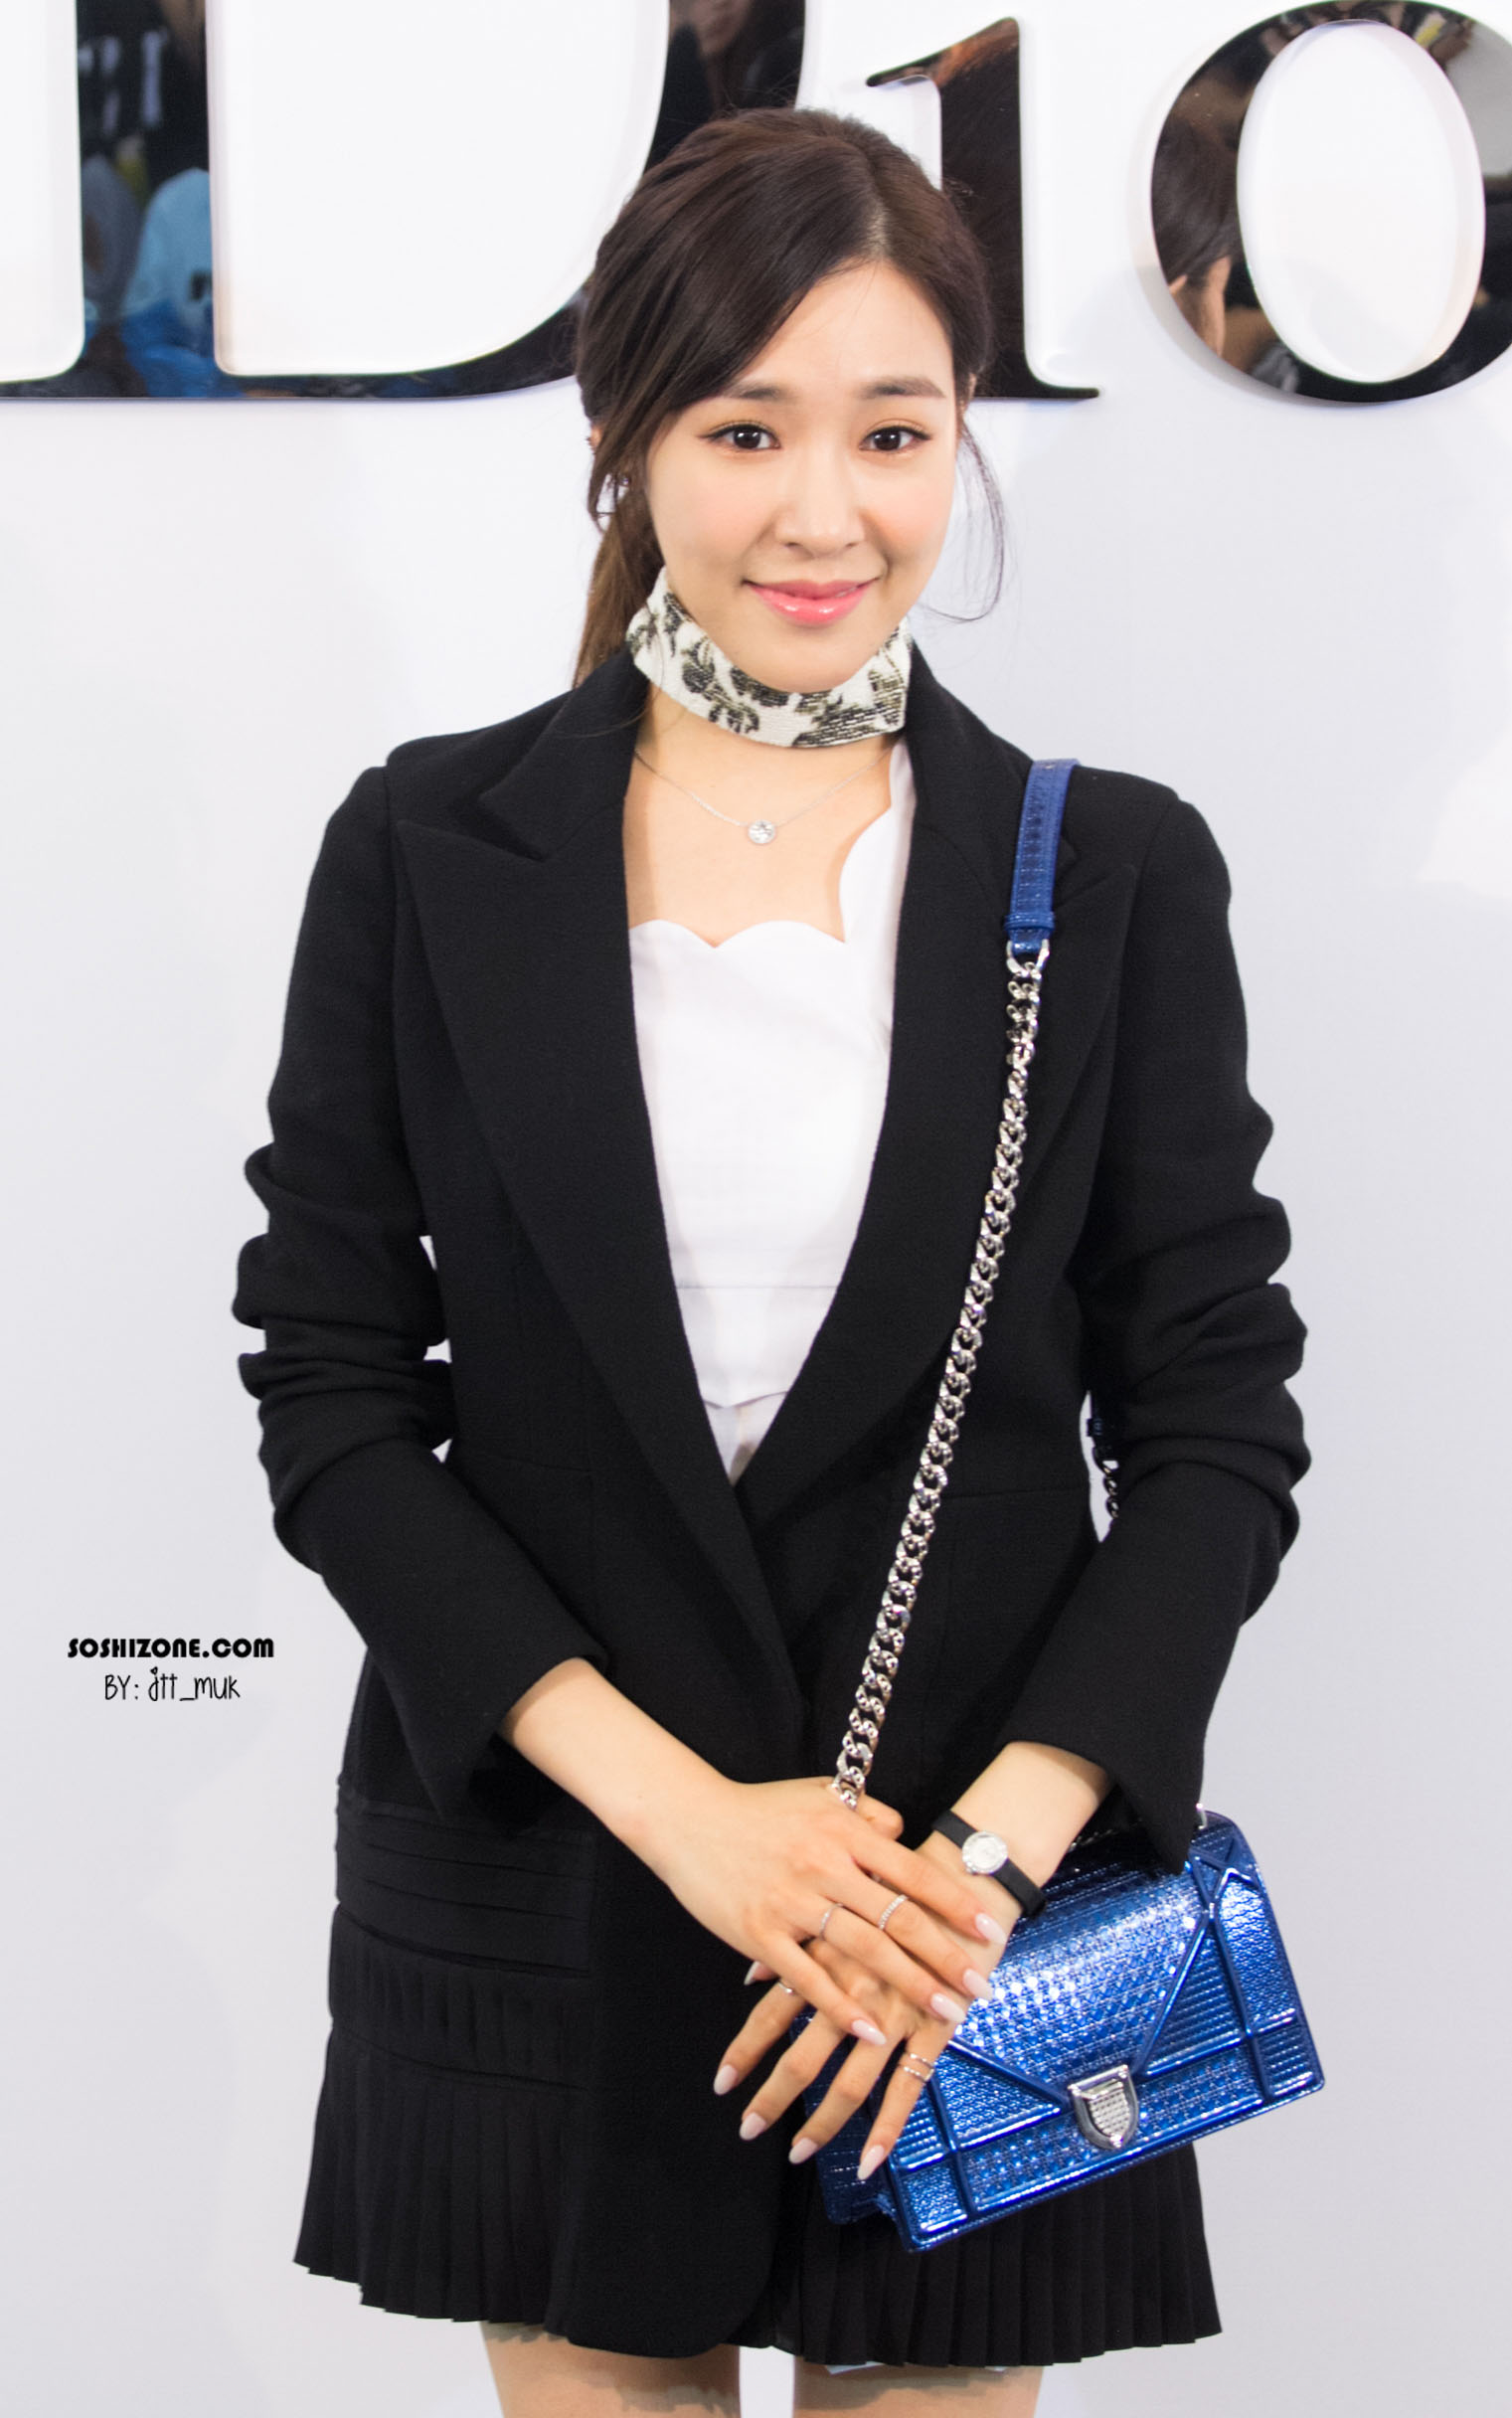 [PIC][17-02-2016]Tiffany khởi hành đi Thái Lan để tham dự sự kiện khai trương chi nhánh của thương hiệu "Christian Dior" vào hôm nay - Page 14 220867395728D3360E018B